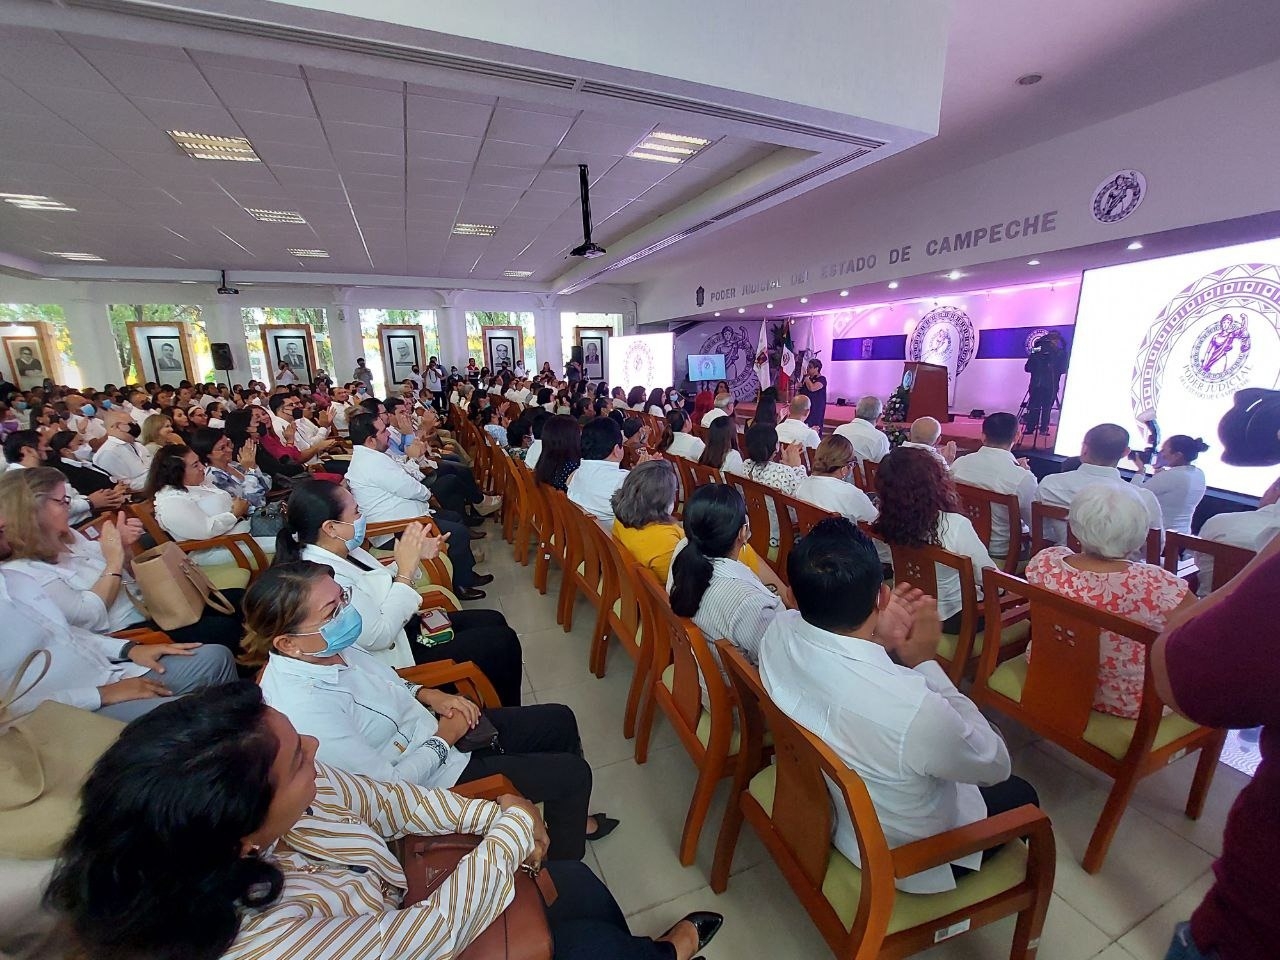 El informe del Poder Judicial de Campeche será en la Sala de Sesiones “María Lavalle Urbina”